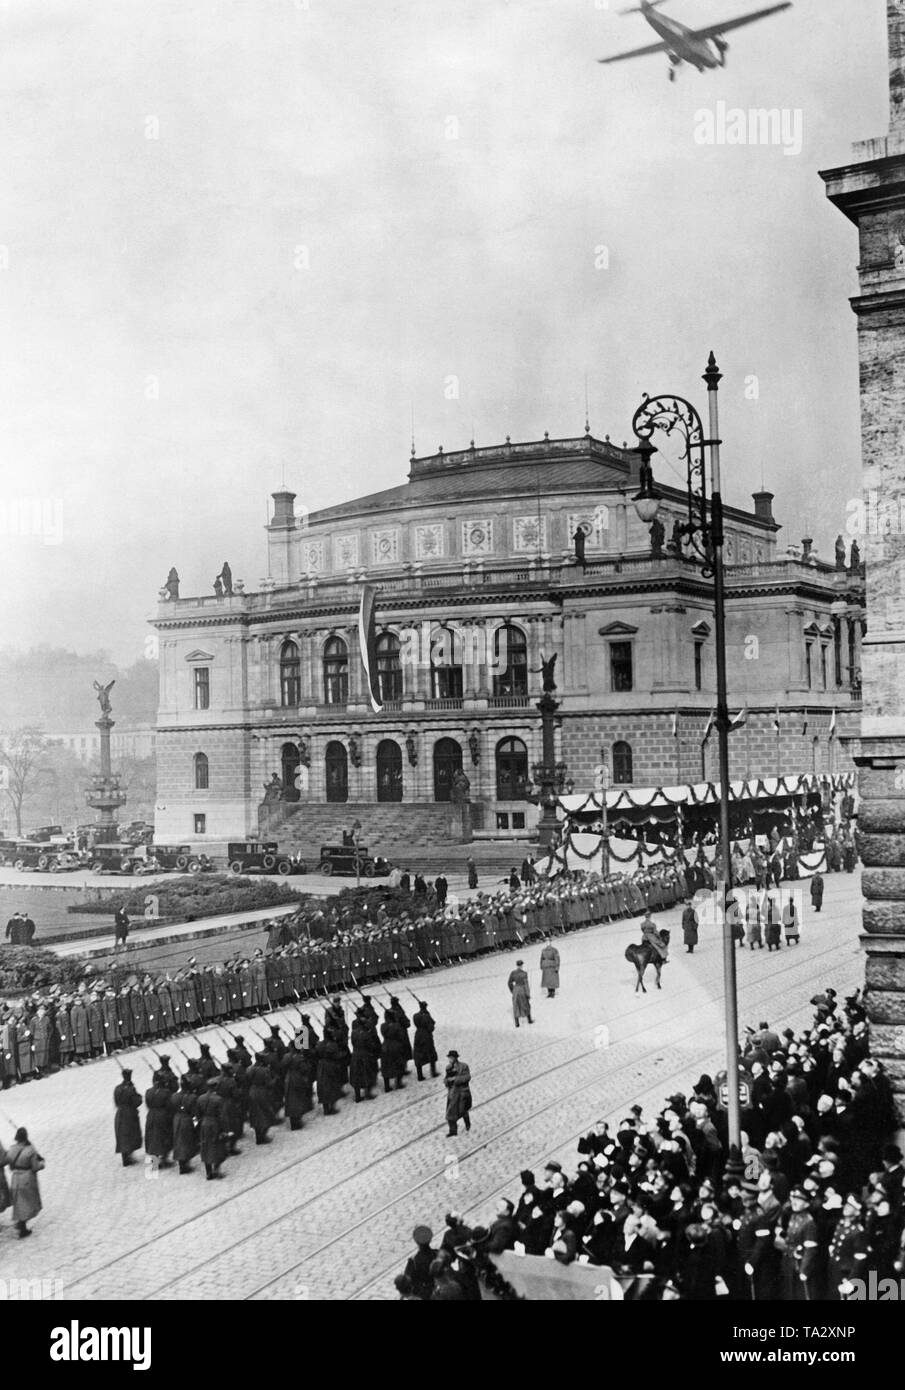 Parade de la garnison à l'occasion du 15e anniversaire de la fondation de la République tchécoslovaque de Prague. Le président Tomas Garrigue Masaryk se félicite de la parade sur la tribune (r.) au parlement de la République tchèque. Banque D'Images